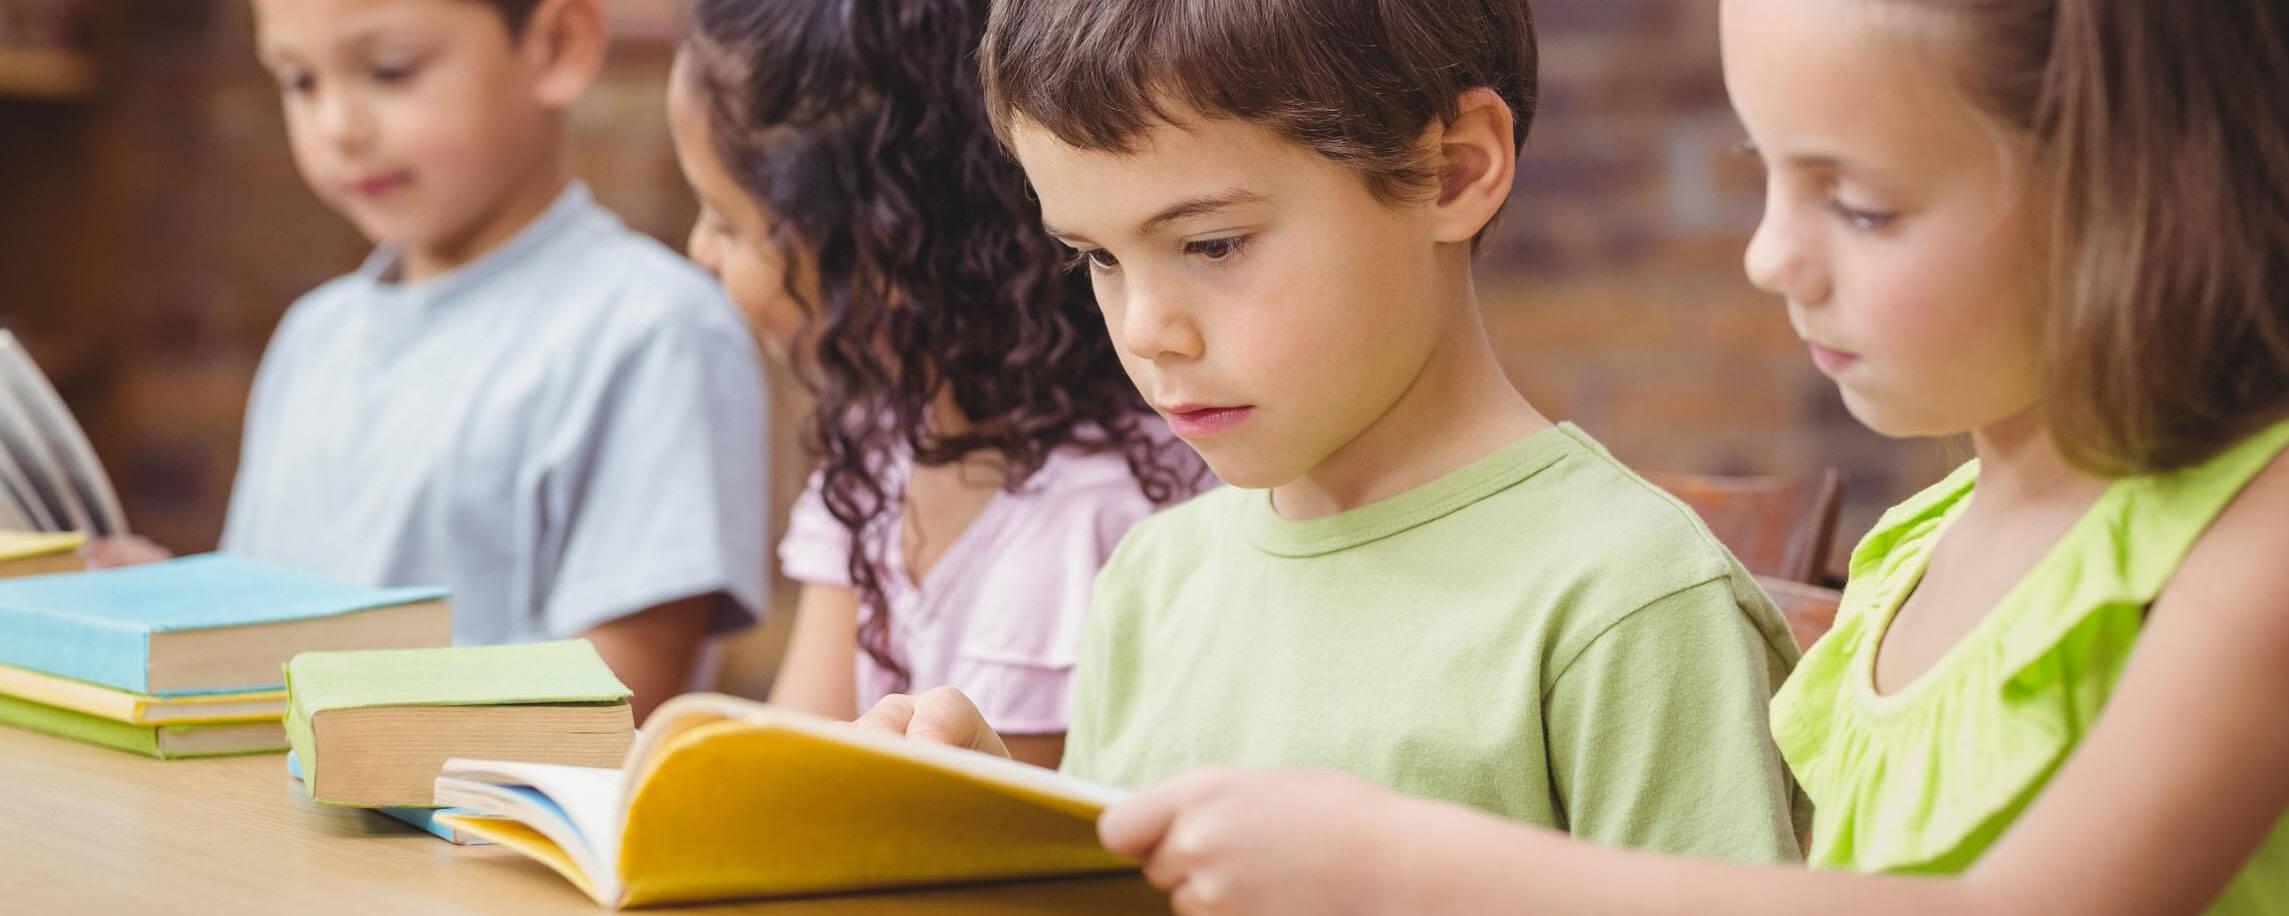 十本励志图书助力孩子健康成长